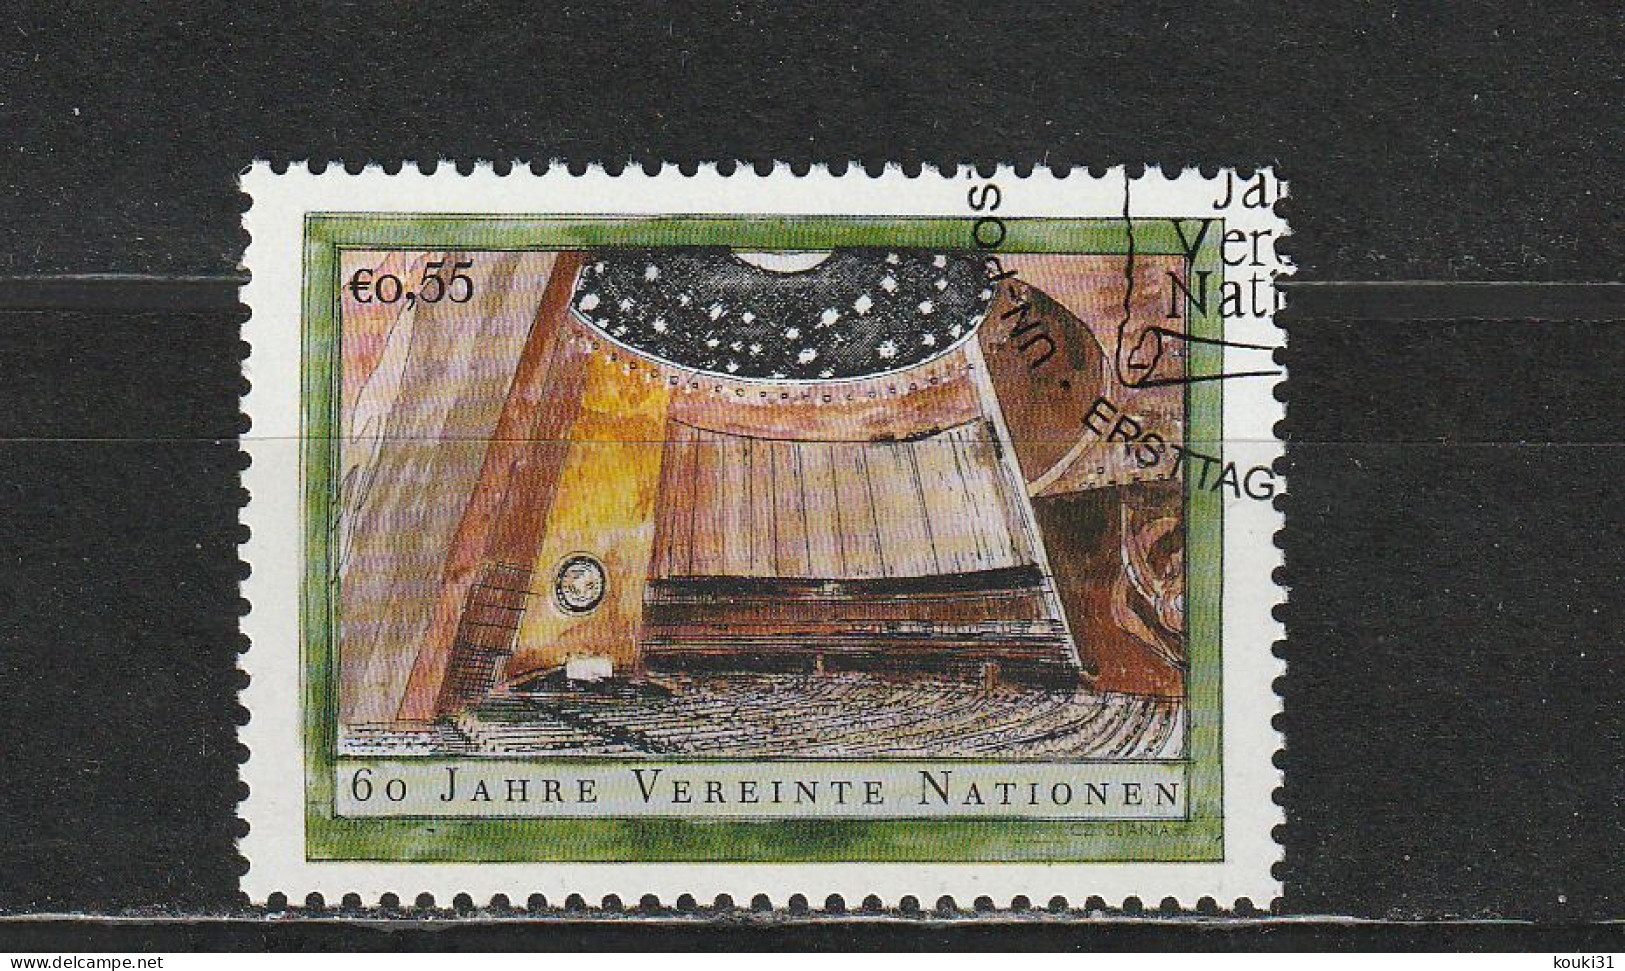 Nations Unies ( Vienne ) YT 444 Obl : Salle Des Assemblées Générales De L'ONU  - 2005 - Used Stamps